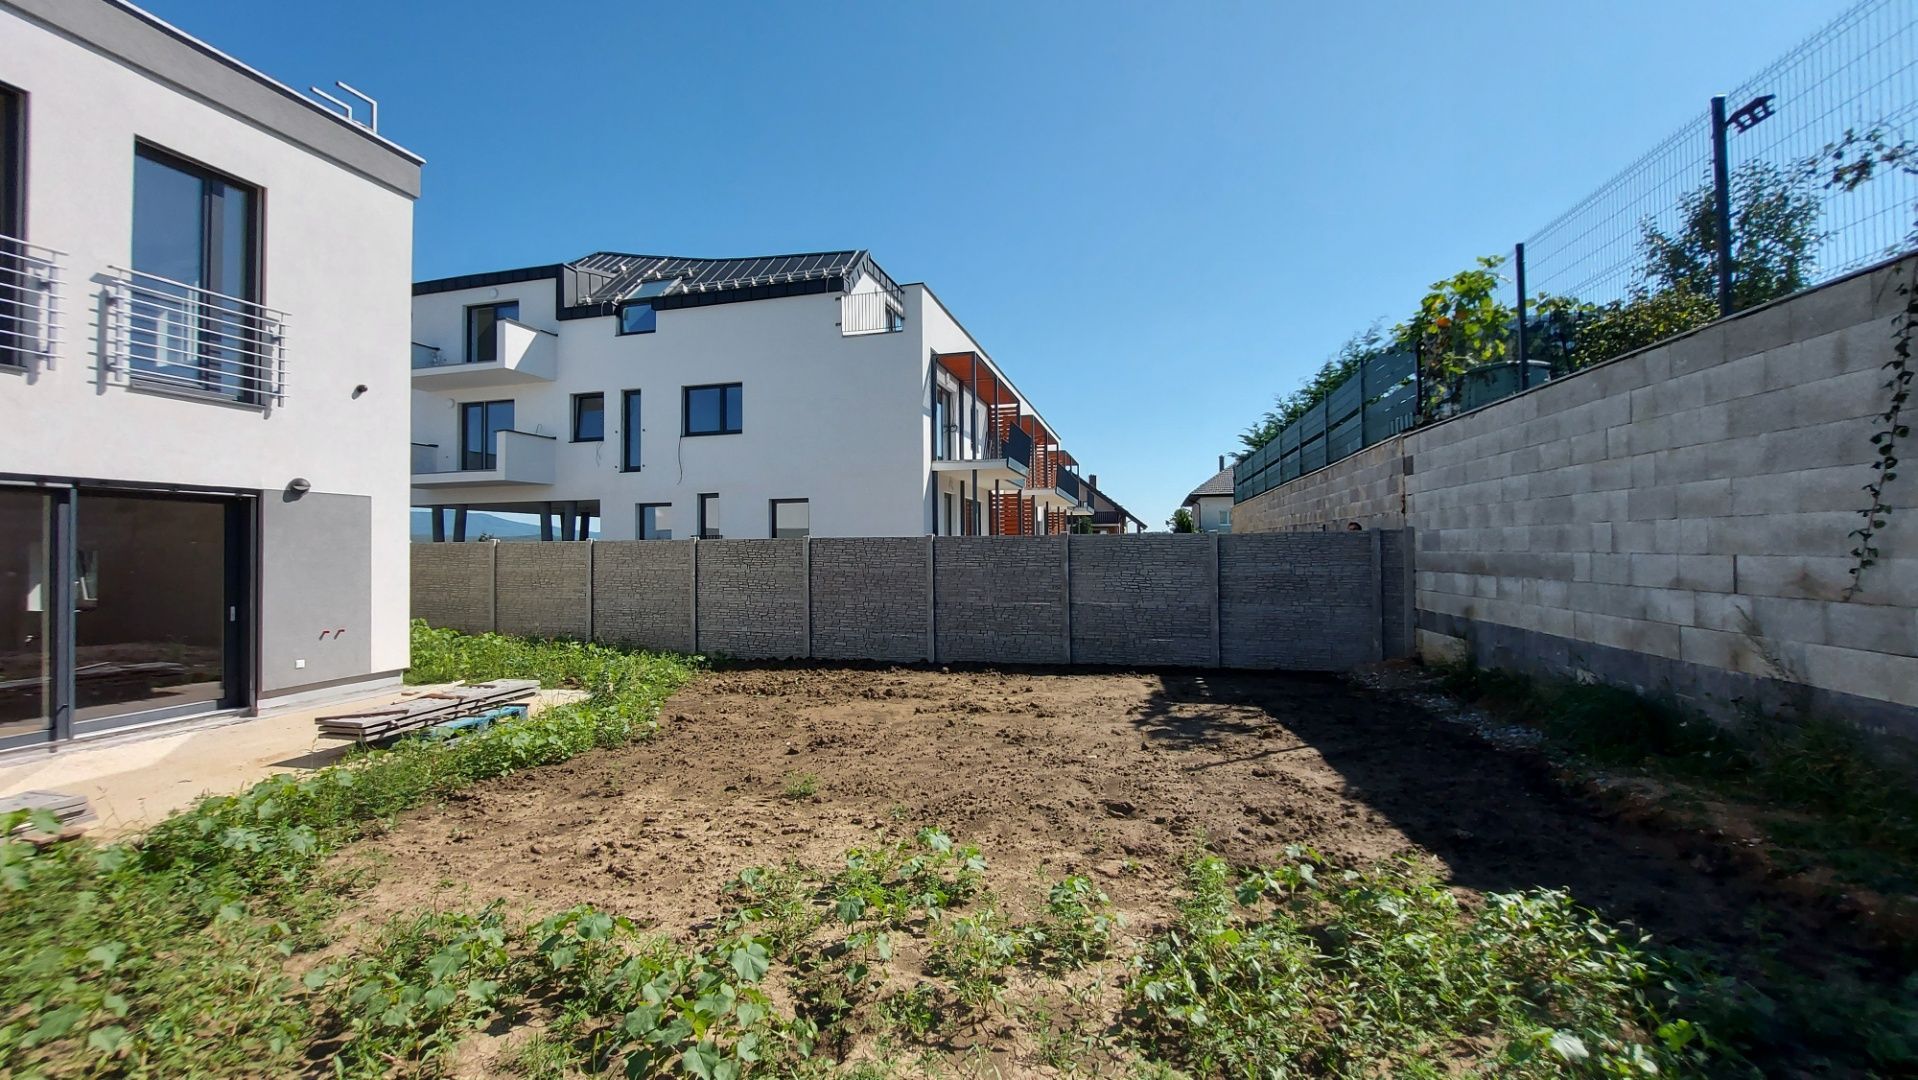 ADOMIS - predáme 5izbový nadštandardný RD 2podlažný kompletne dokončený, 2x kúpelňa,kolaudácia,131m2,parking,záhradka,Košice - Krásna